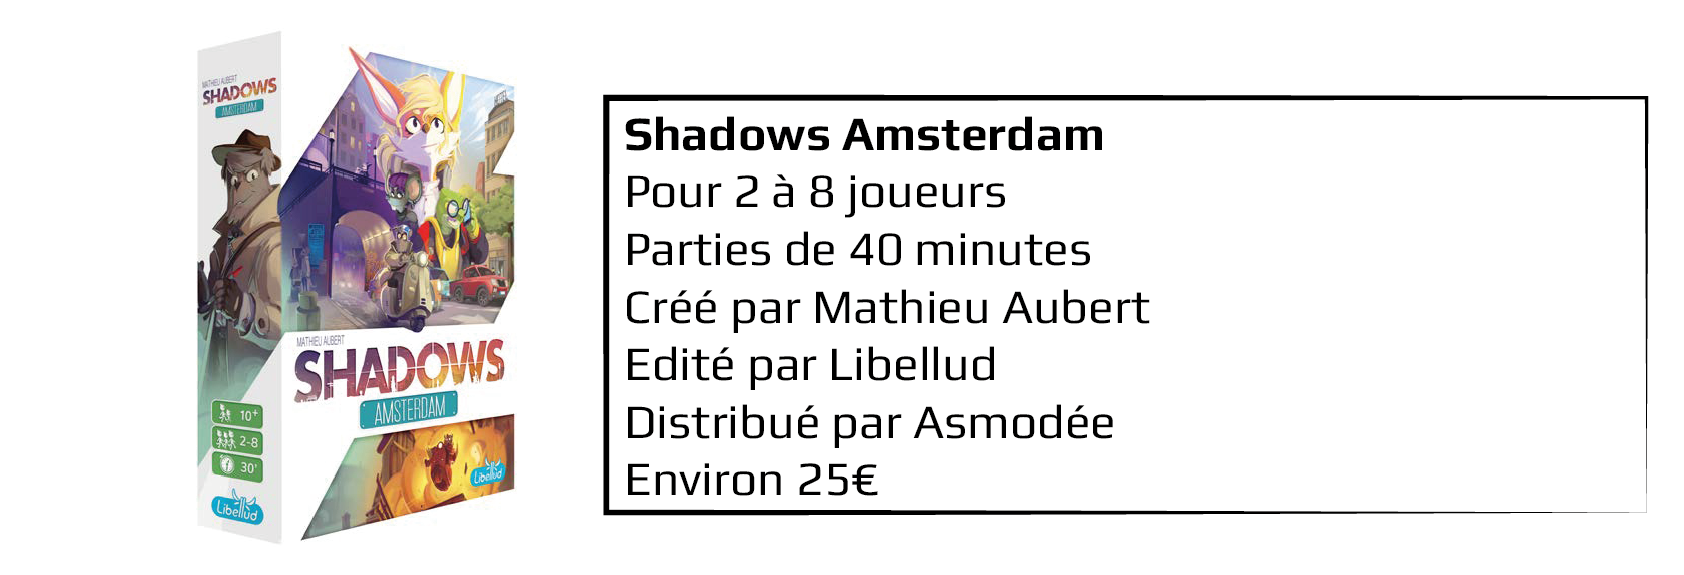 Shadows amsterdam 4